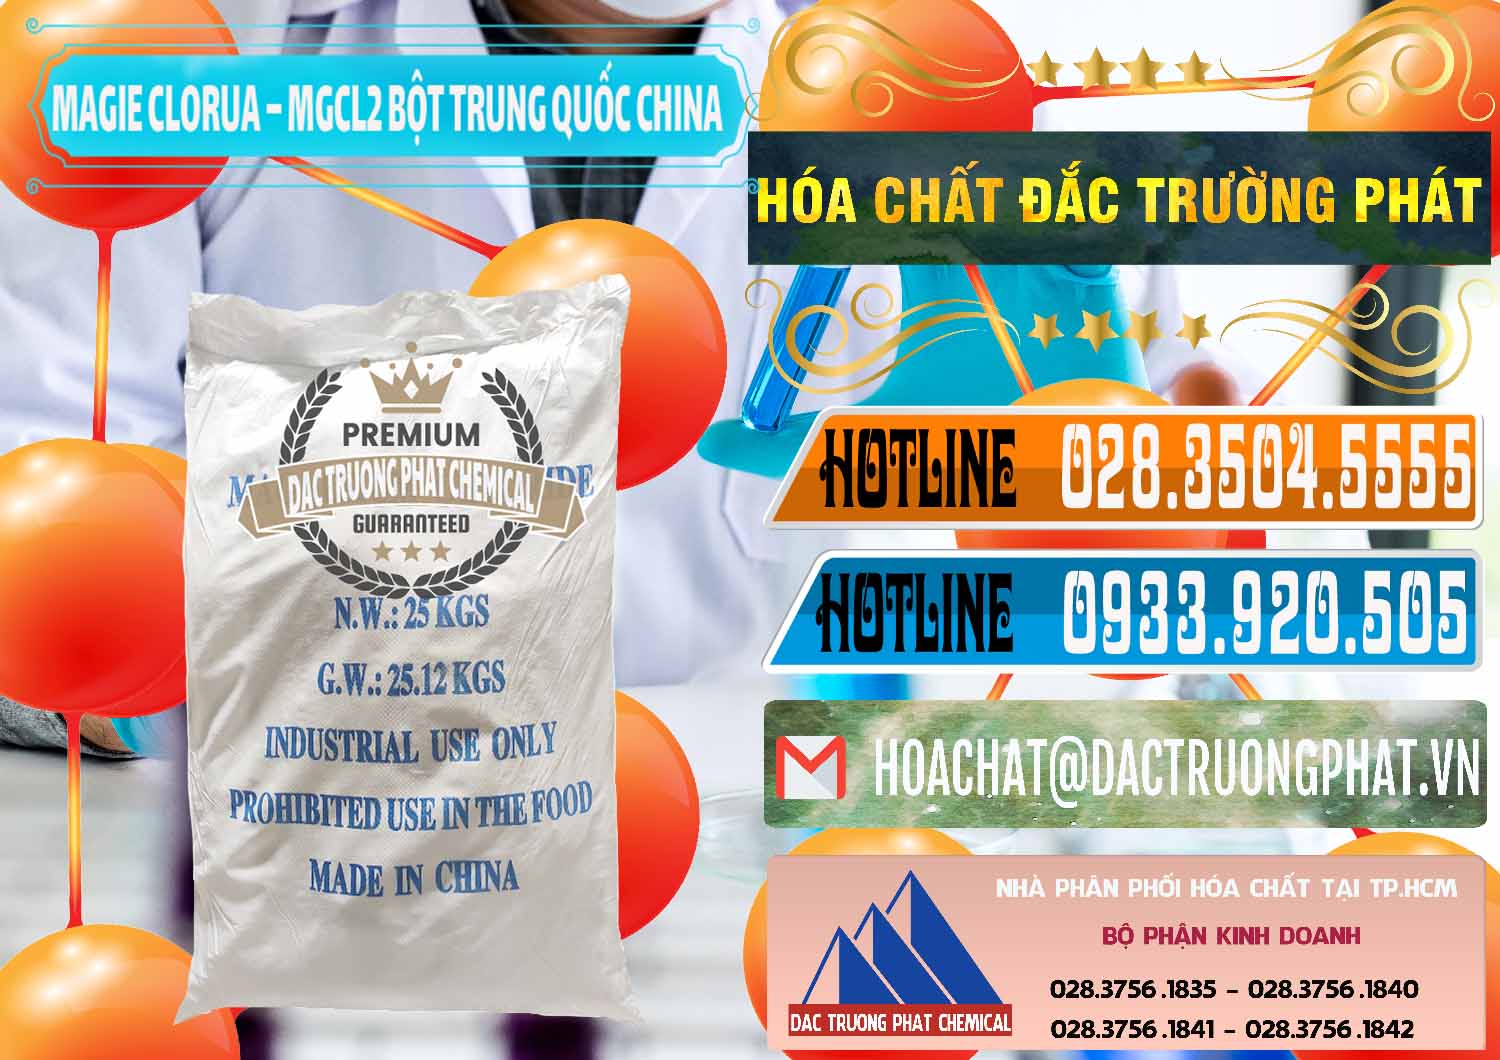 Phân phối - bán Magie Clorua – MGCL2 96% Dạng Bột Bao Chữ Xanh Trung Quốc China - 0207 - Cty chuyên phân phối _ nhập khẩu hóa chất tại TP.HCM - stmp.net